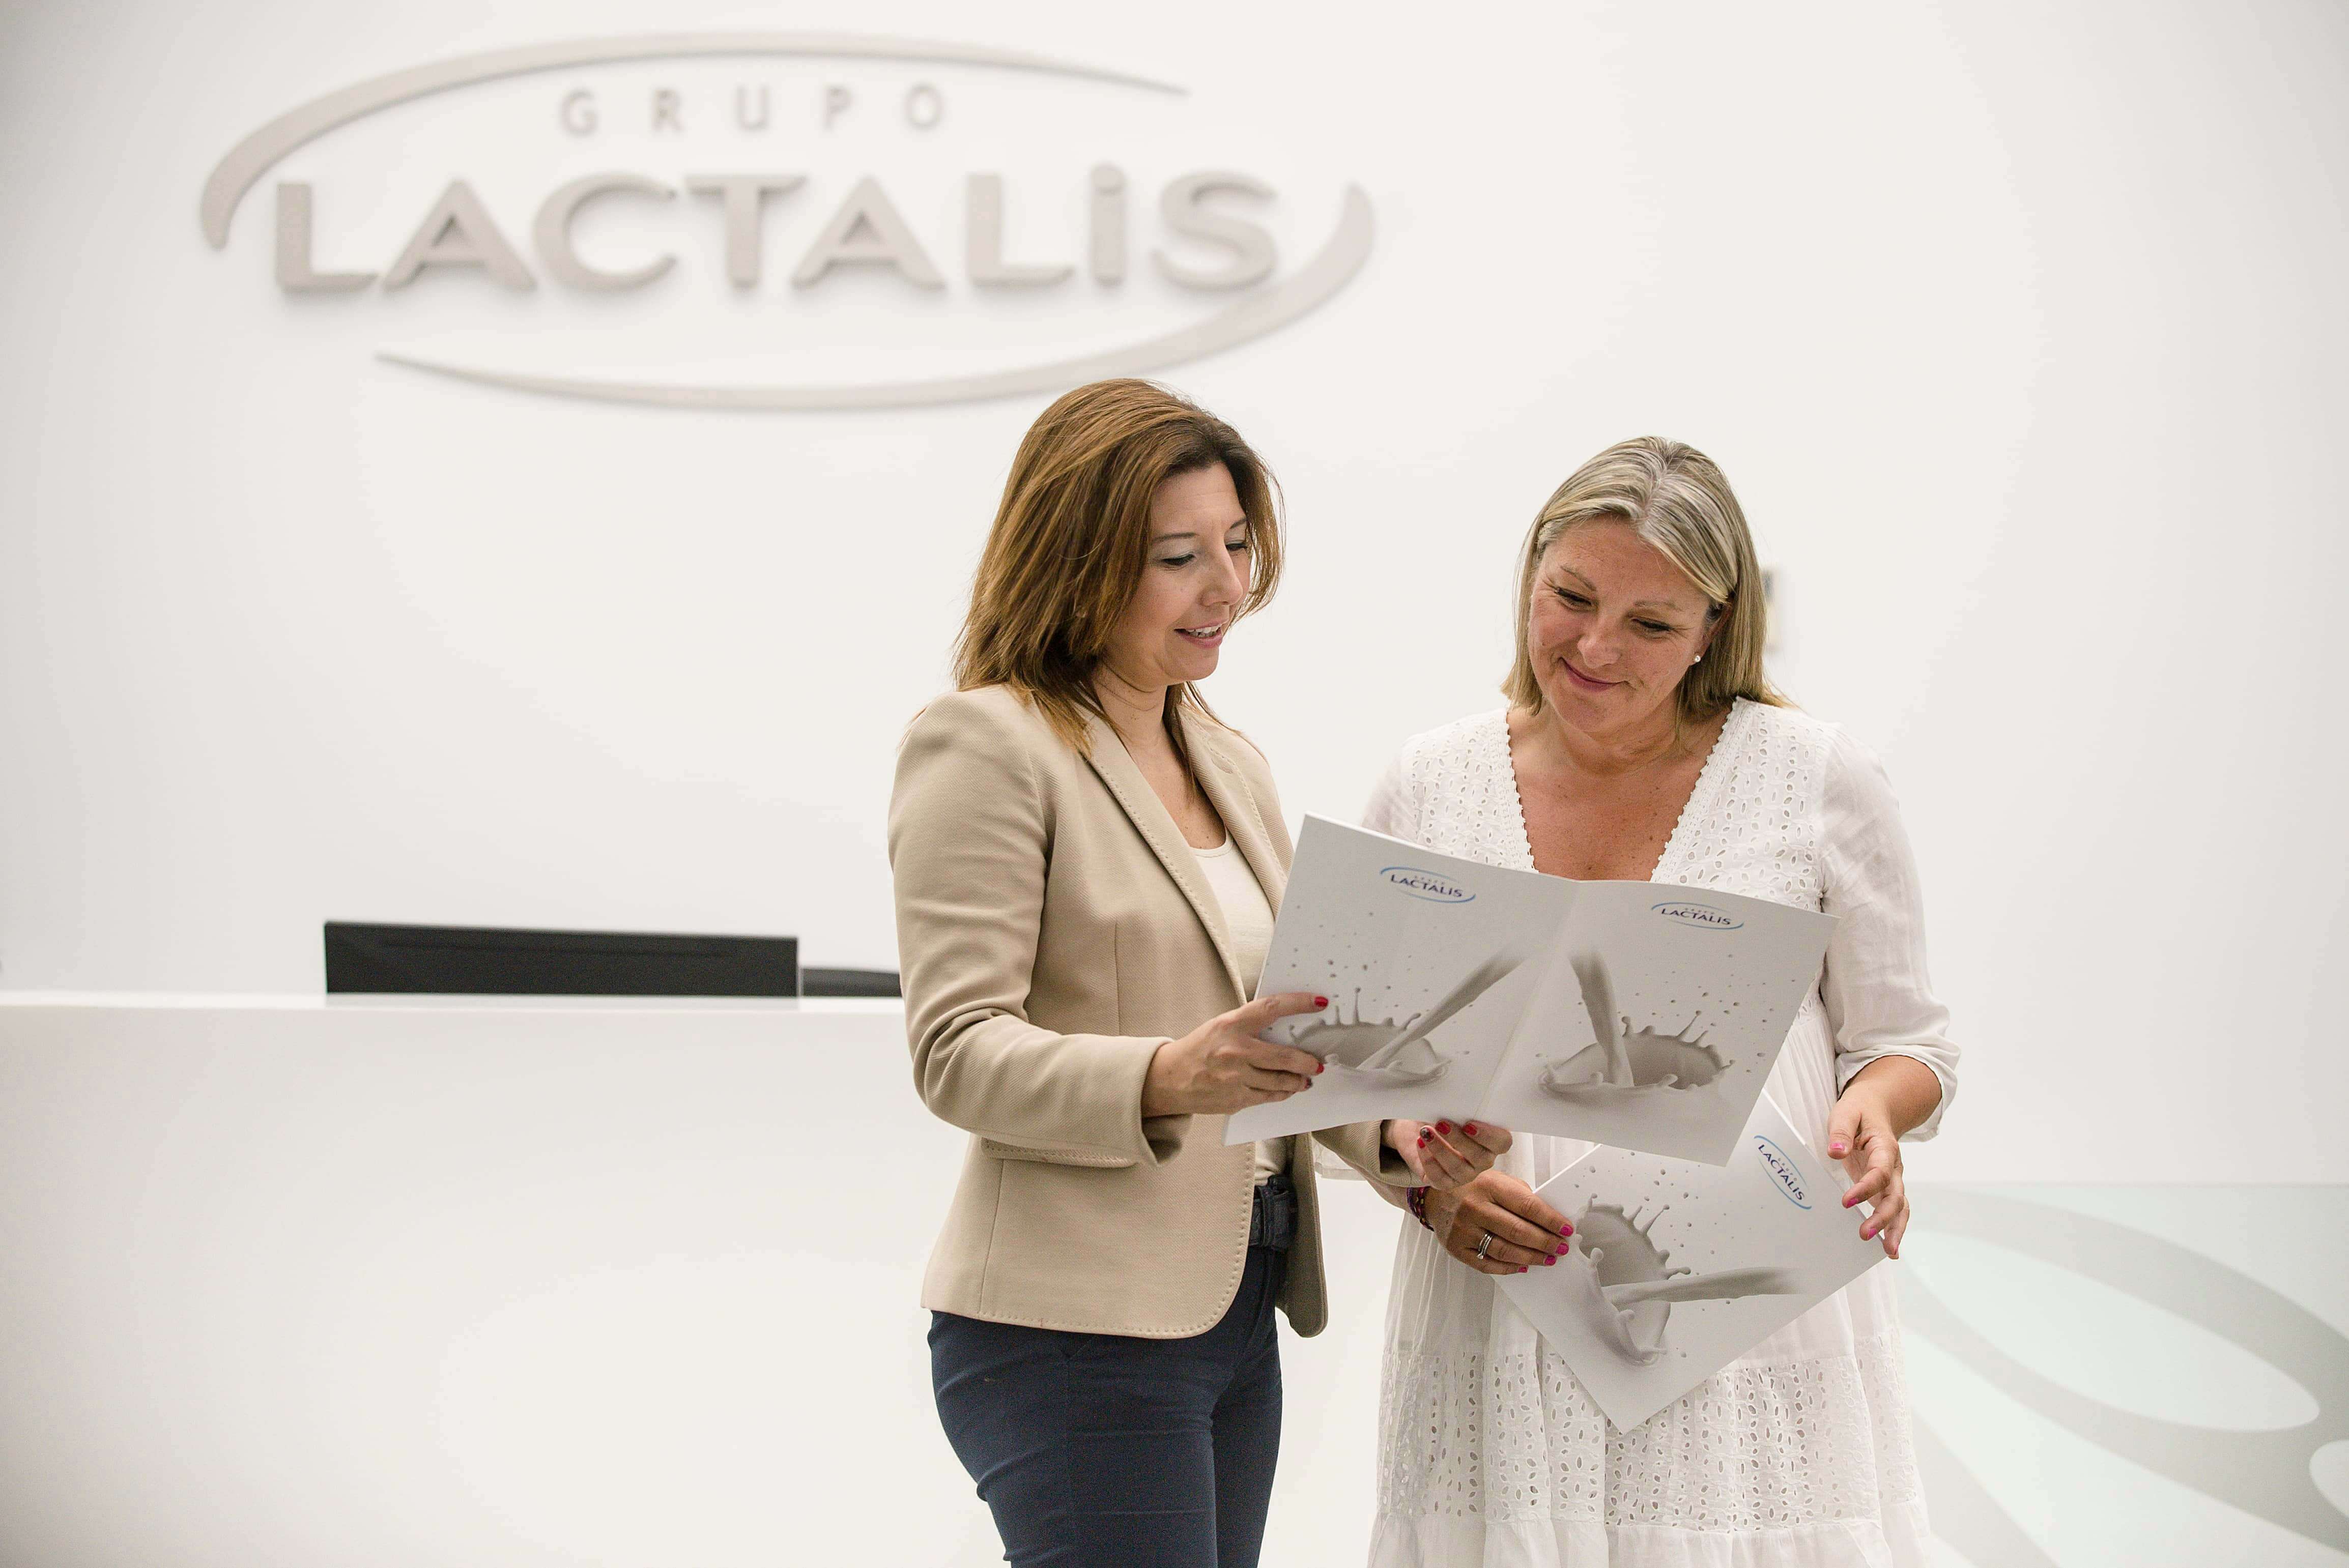 Grupo Lactalis 40 años de compromiso con las personas, con el empleo estable y de calidad y con el talento